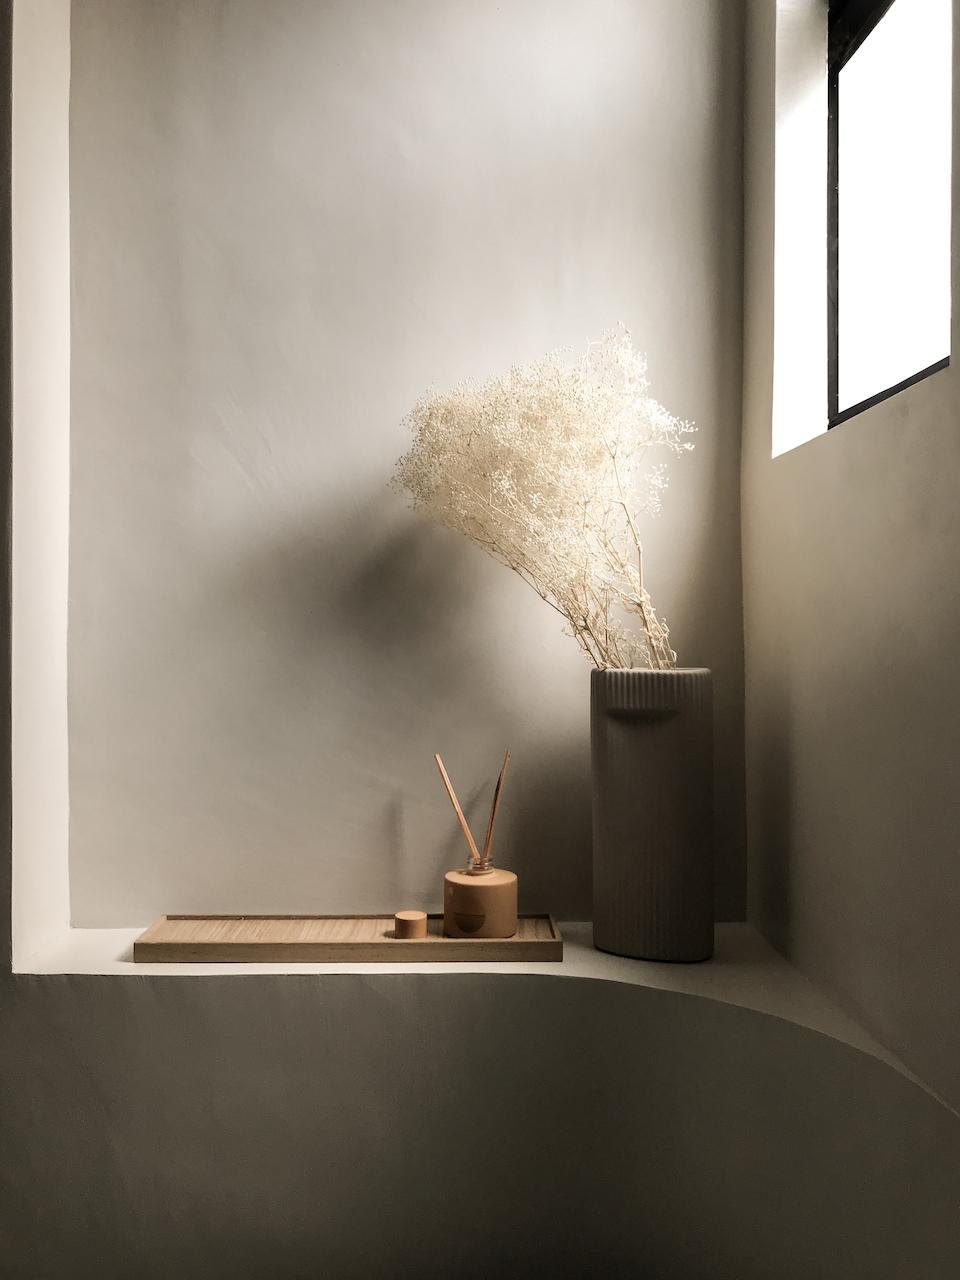 This 758-sq.ft. Hong Kong Home Evokes a Zen-like Sensibility